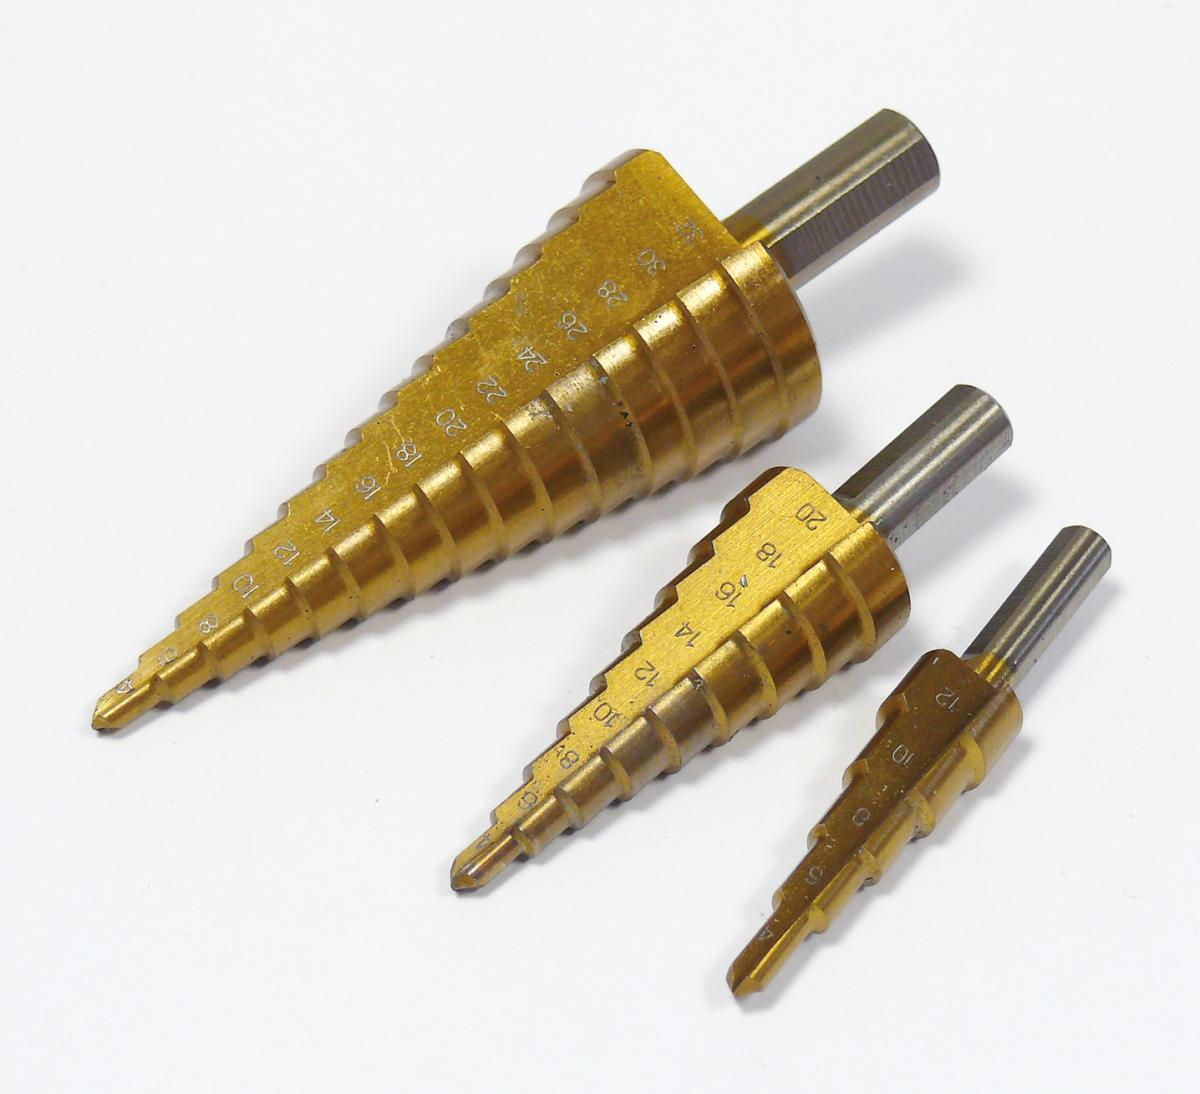 Assortiment de 3 forets à étages hss - 4 à 12 mm, 4 à 20 mm, 4 à 30 mm.